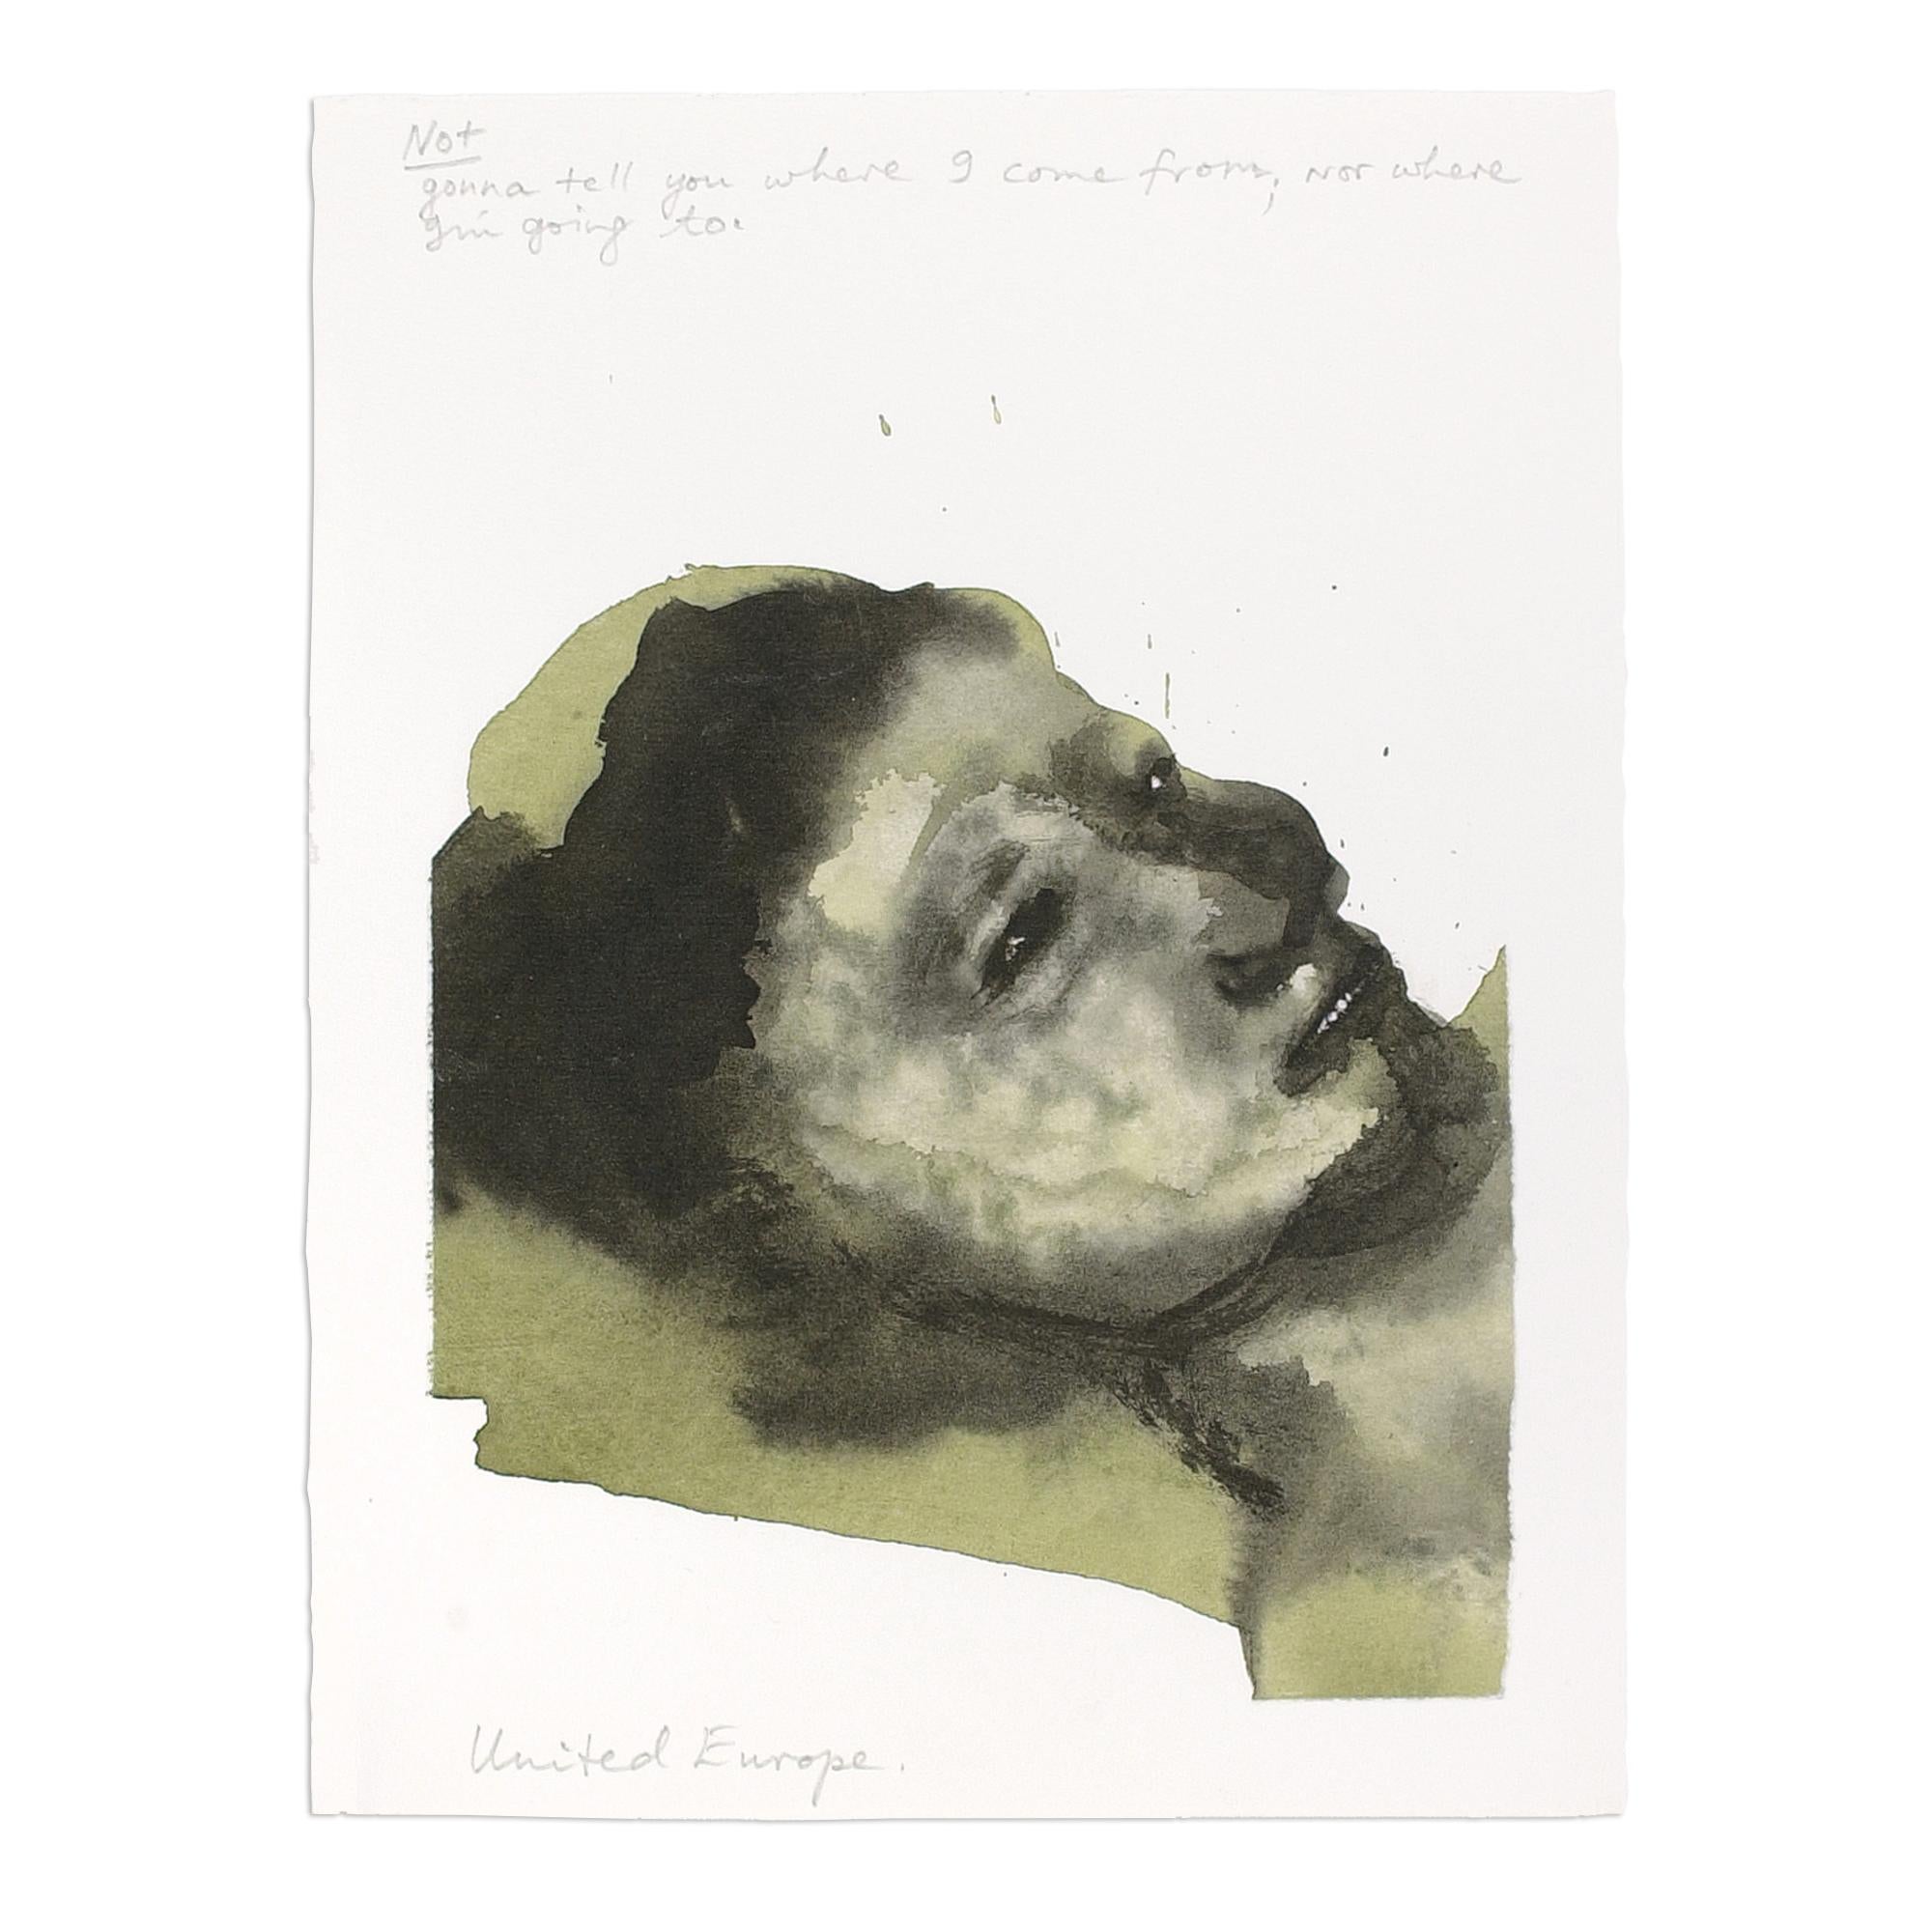 Marlene Dumas (Südafrikanerin, geb. 1953)
Vereinigtes Europa, 2003/05
Medium: Digitaler Pigmentdruck auf Hadernpapier
Abmessungen: 37 x 28 cm (14,5 x 11 Zoll)
Auflage von 75 Stück: handsigniert und nummeriert
Zustand: Neuwertig